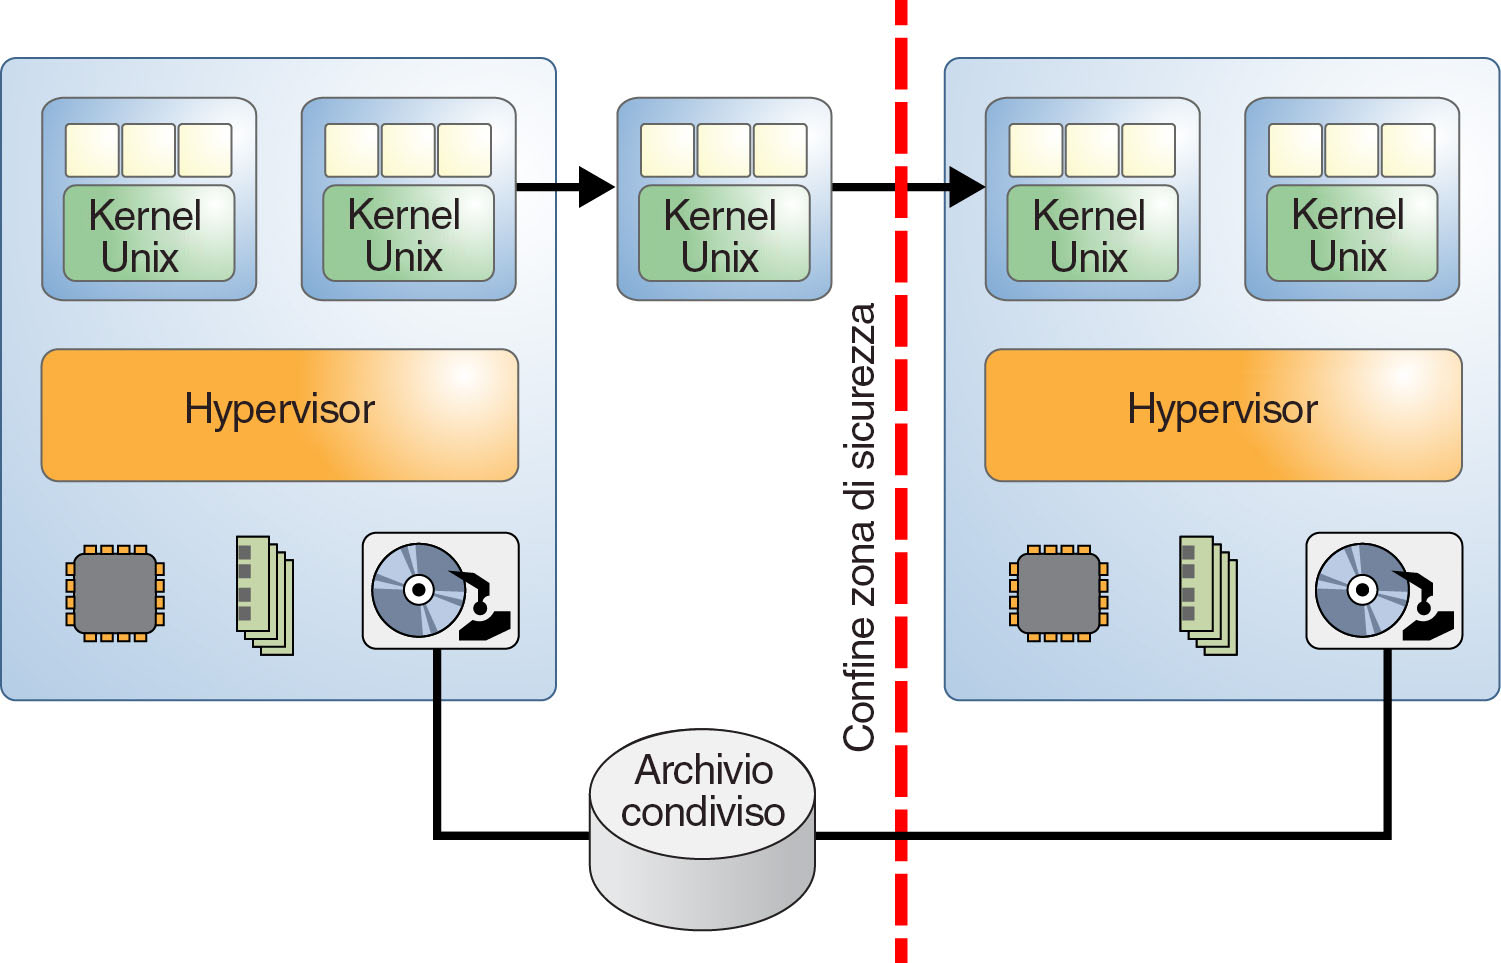 image:Il grafico mostra due sistemi virtualizzati divisi da un confine di classi di sicurezza.